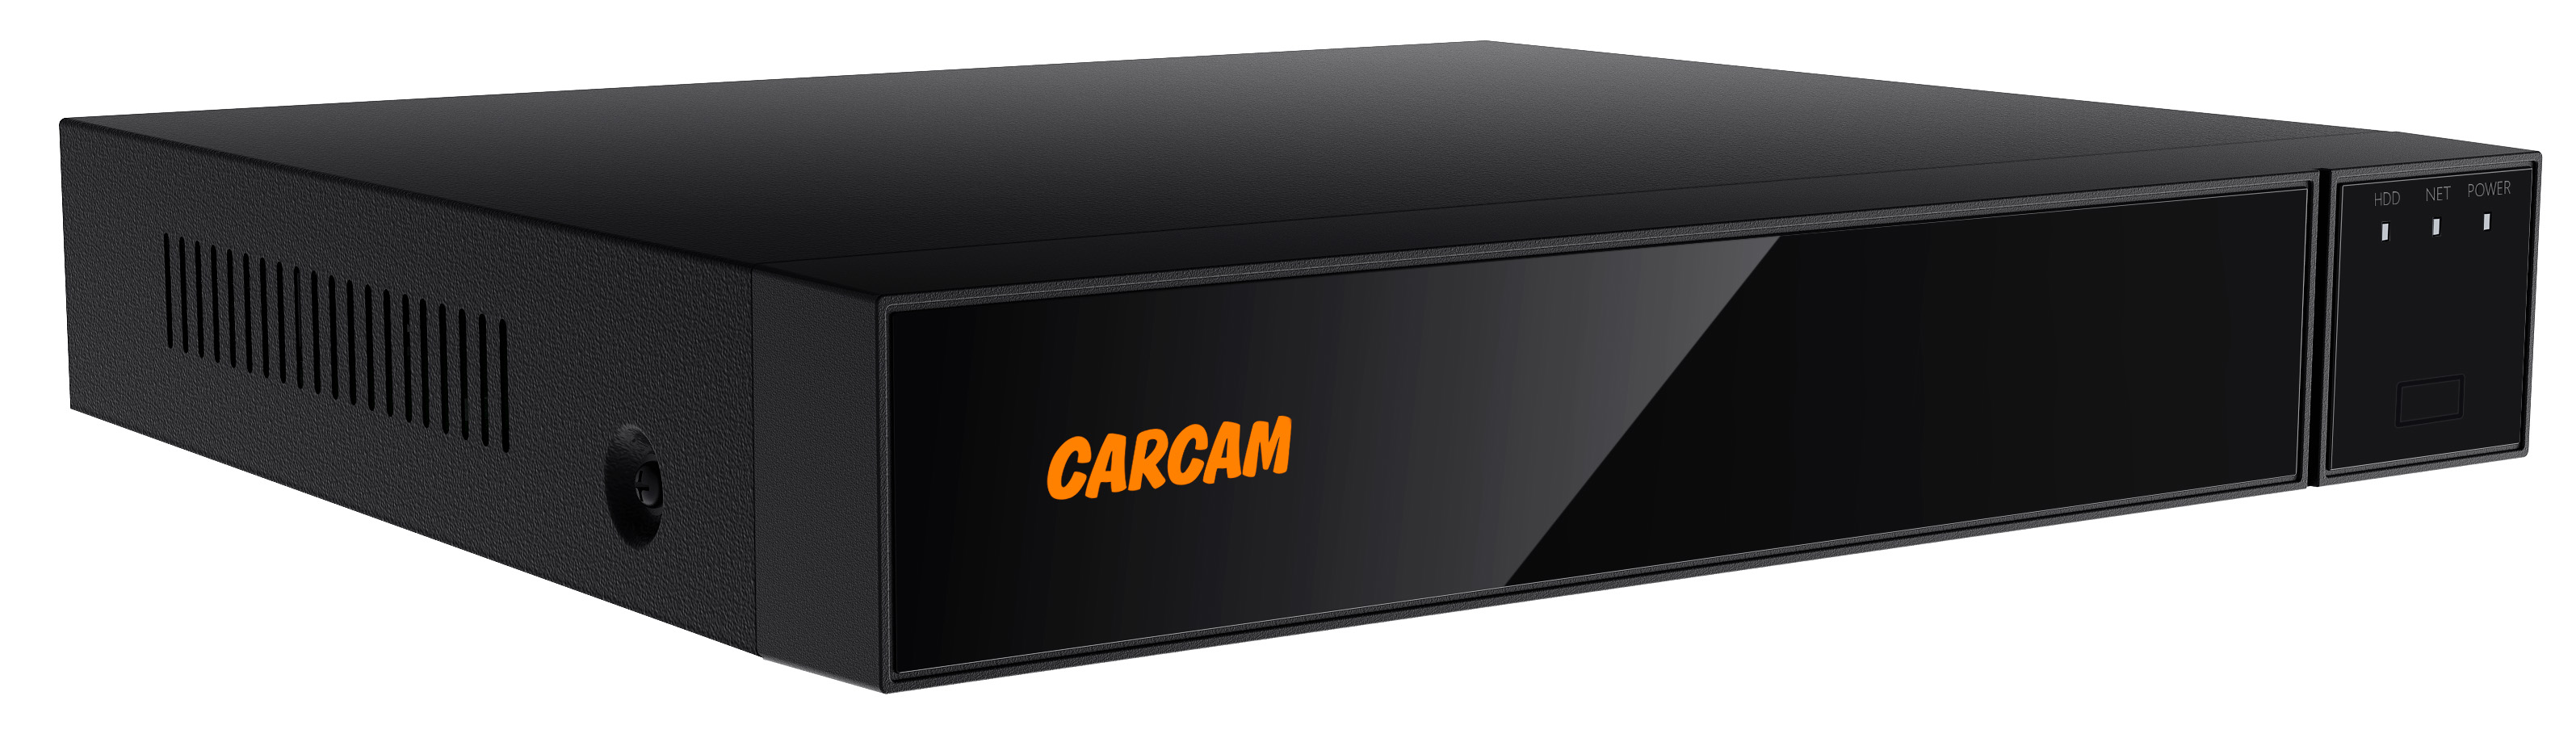 16-канальный гибридный видеорегистратор CARCAM 16CH XVR 8716 16 канальный гибридный видеорегистратор carcam 16ch xvr 8716